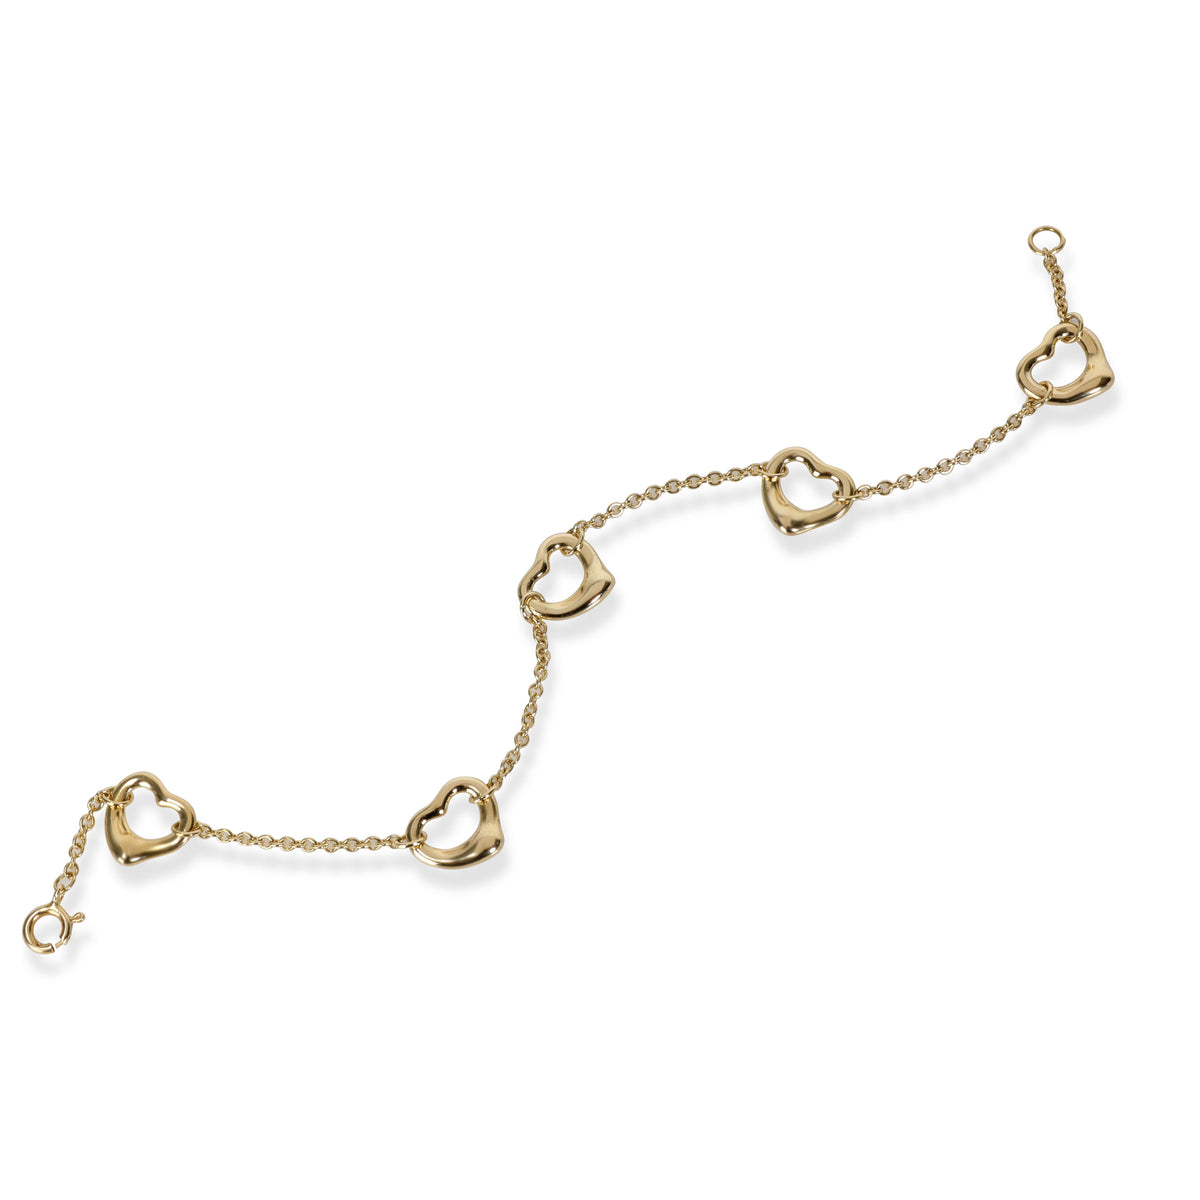 Tiffany & Co. Elsa Peretti Mini Open Heart Bracelet in 18K Yellow Gold